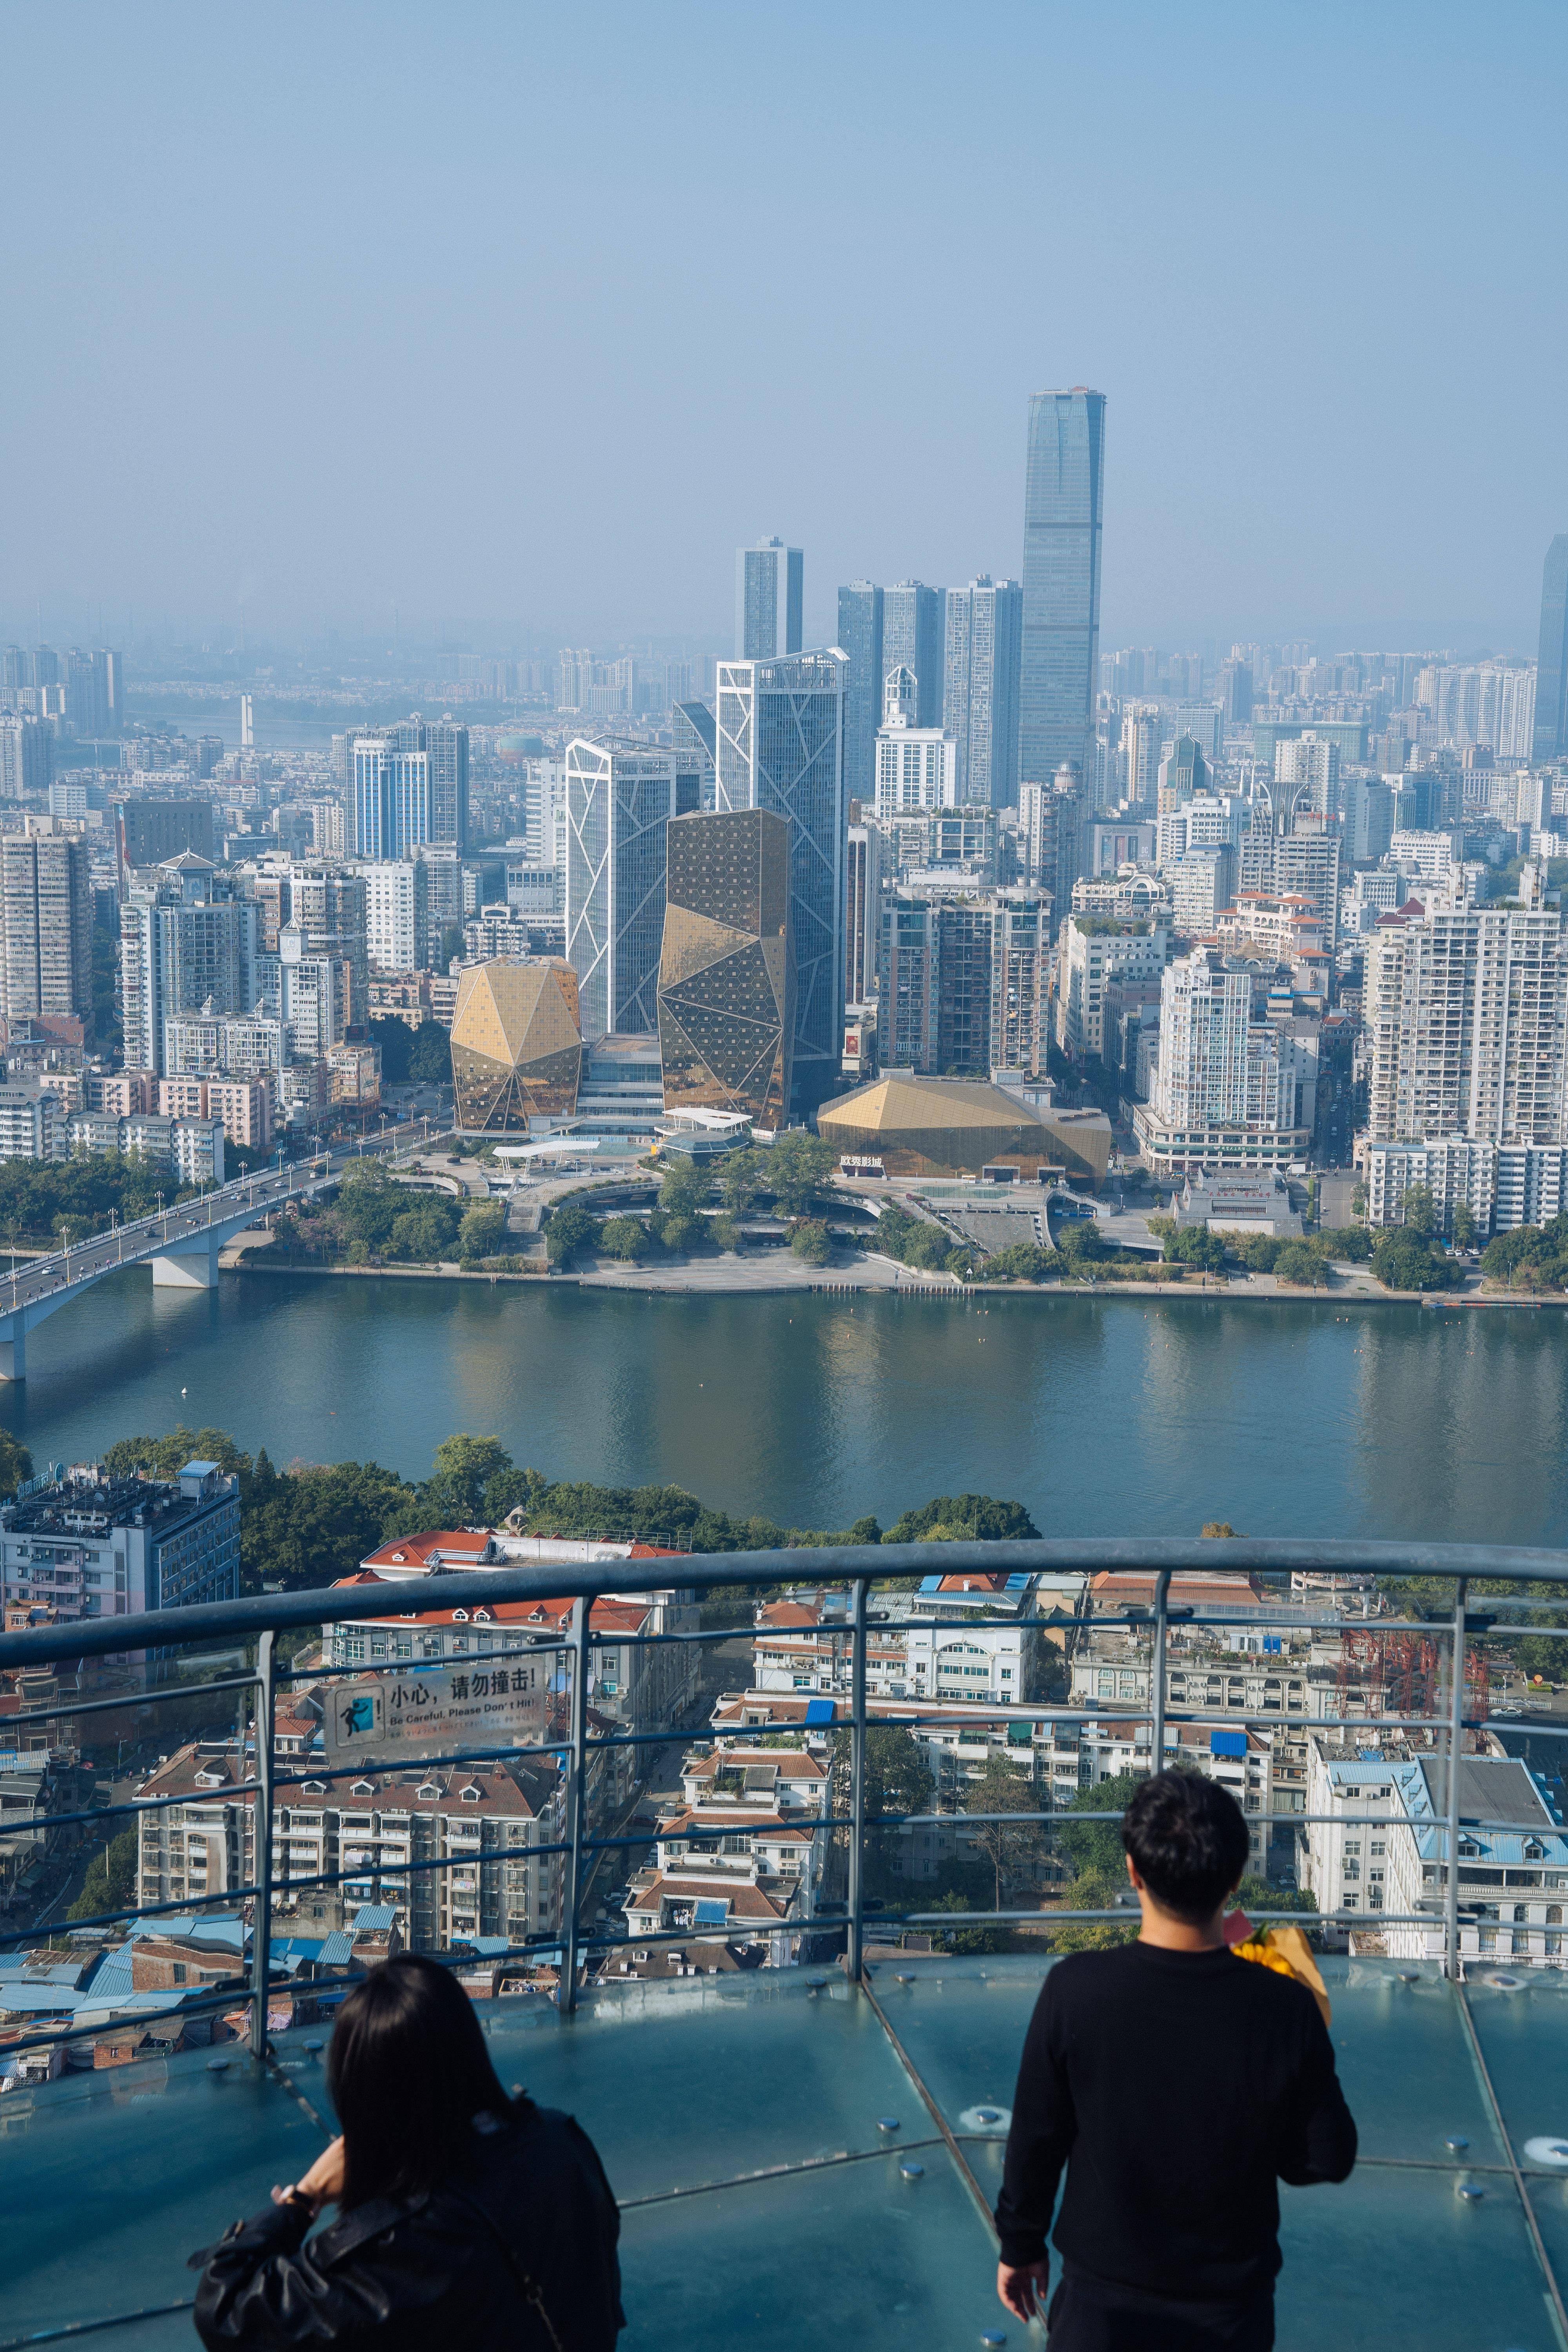 柳州不愧是小重庆,高楼鳞次栉比,景色一级棒